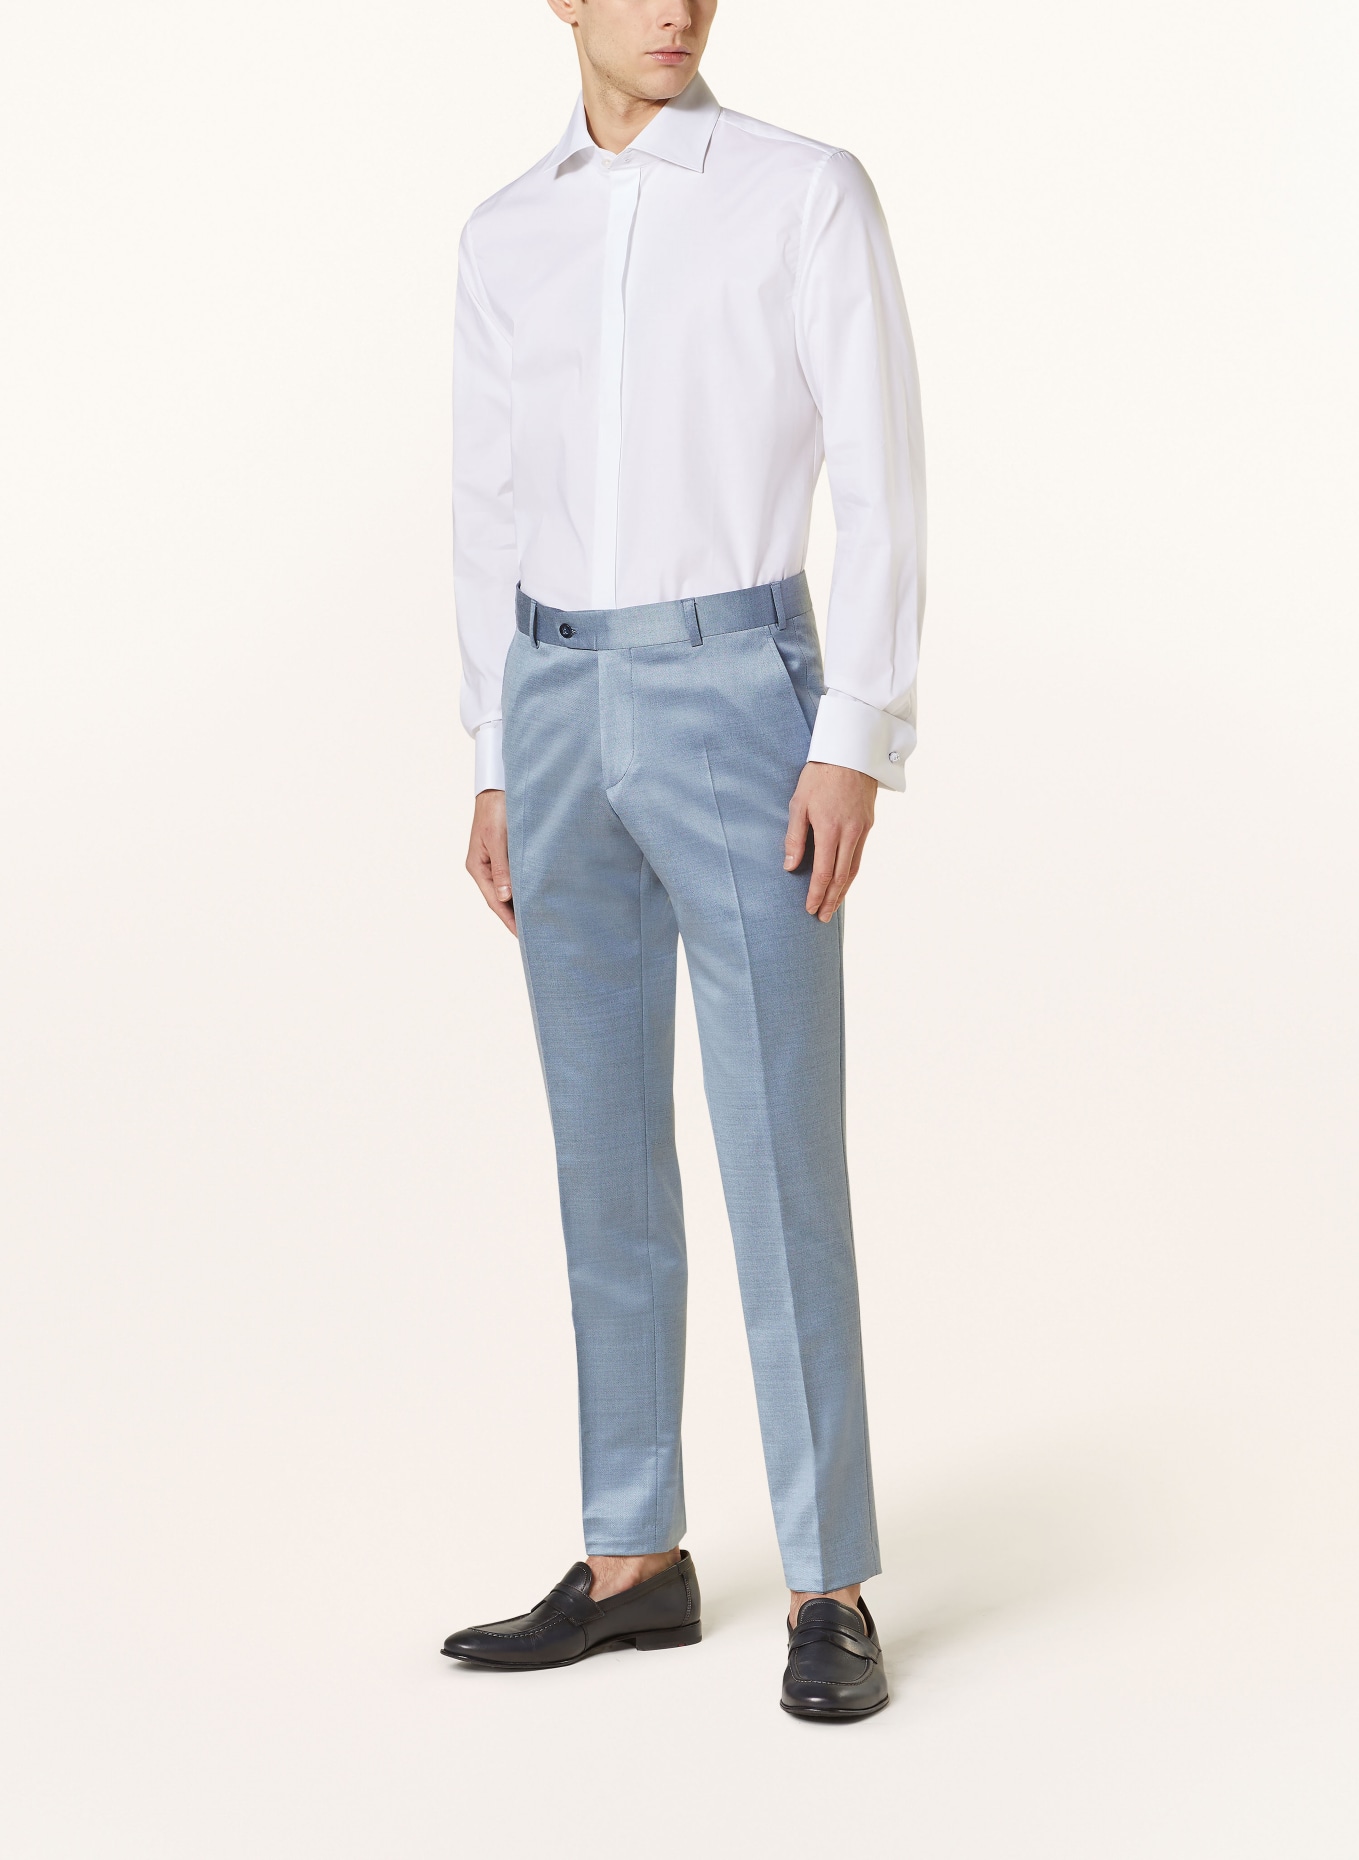 WILVORST Suit trousers slim fit, Color: 036 hell Blau (Image 3)